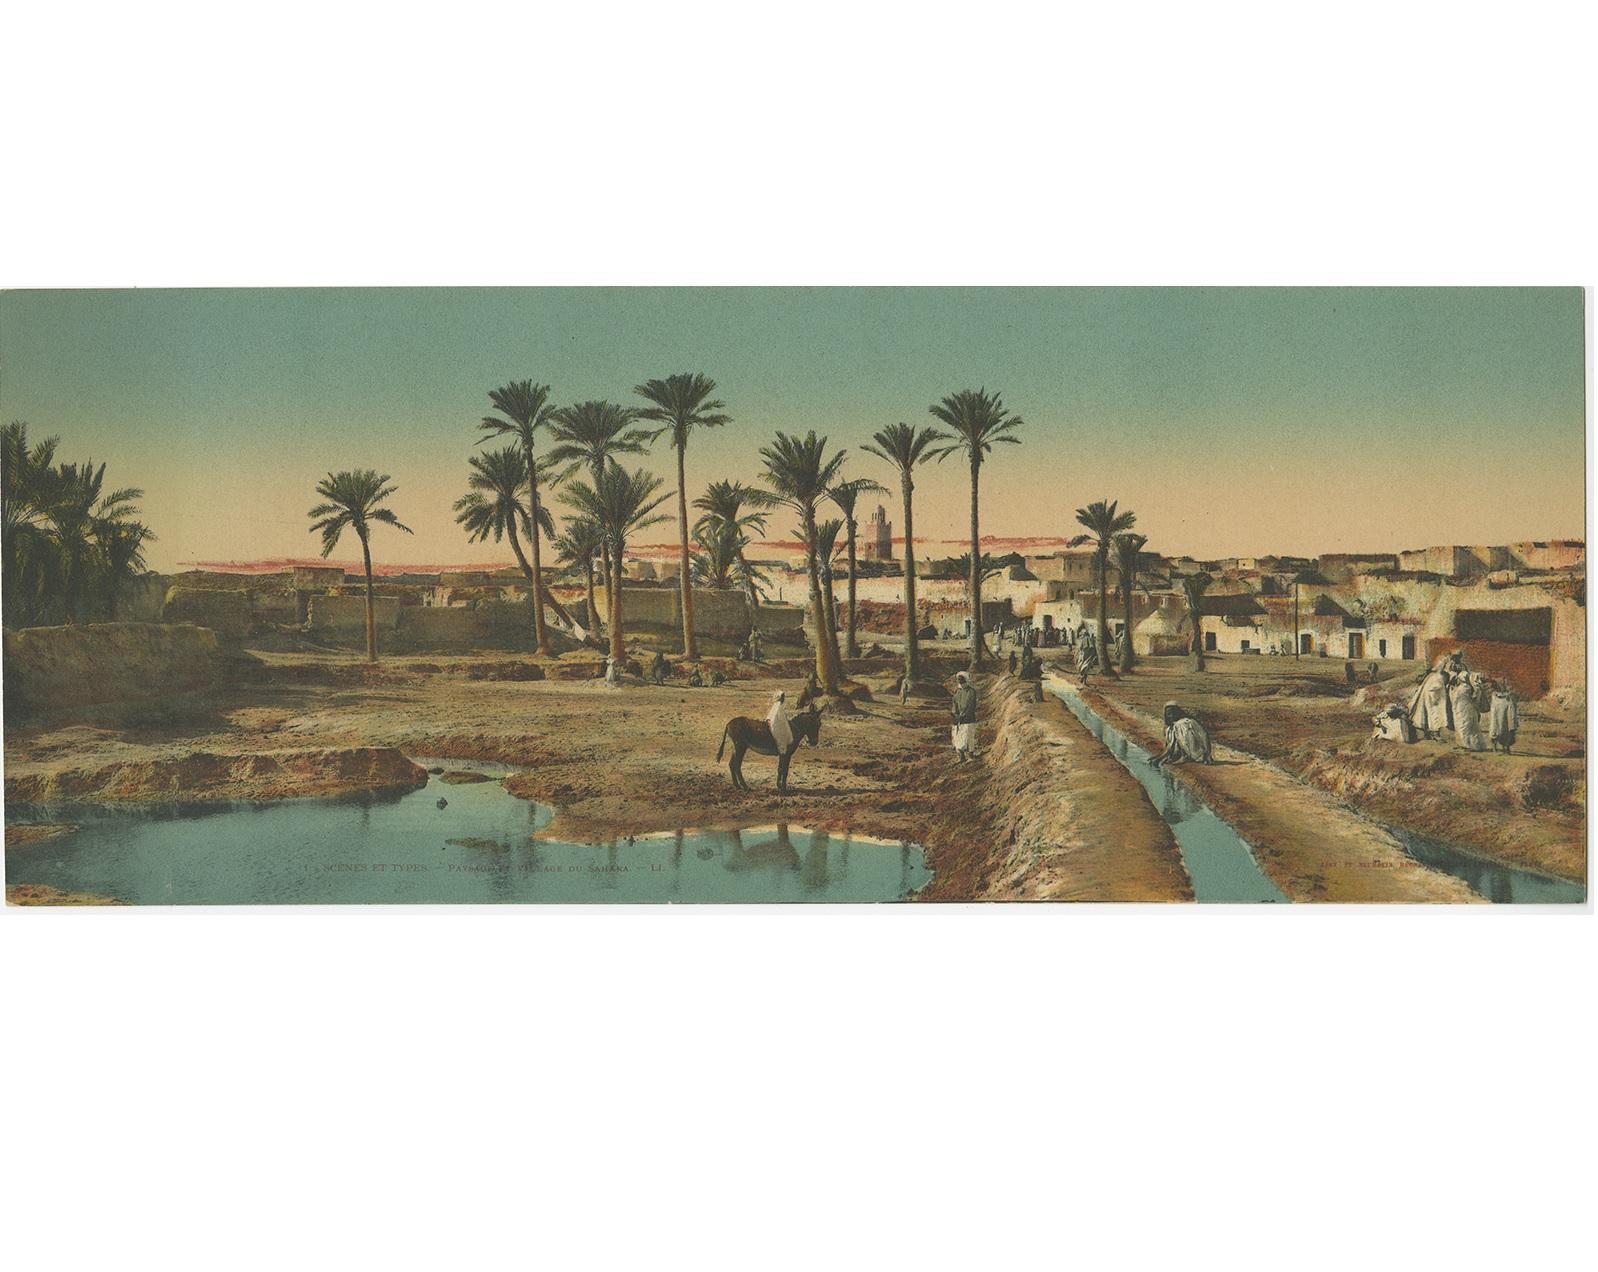 Satz von zwei großen Panoramapostkarten der Sahara. Es zeigt die Sanddünen der Sahara und ein Dorf. Beide erschienen bei Lévy, Paris.